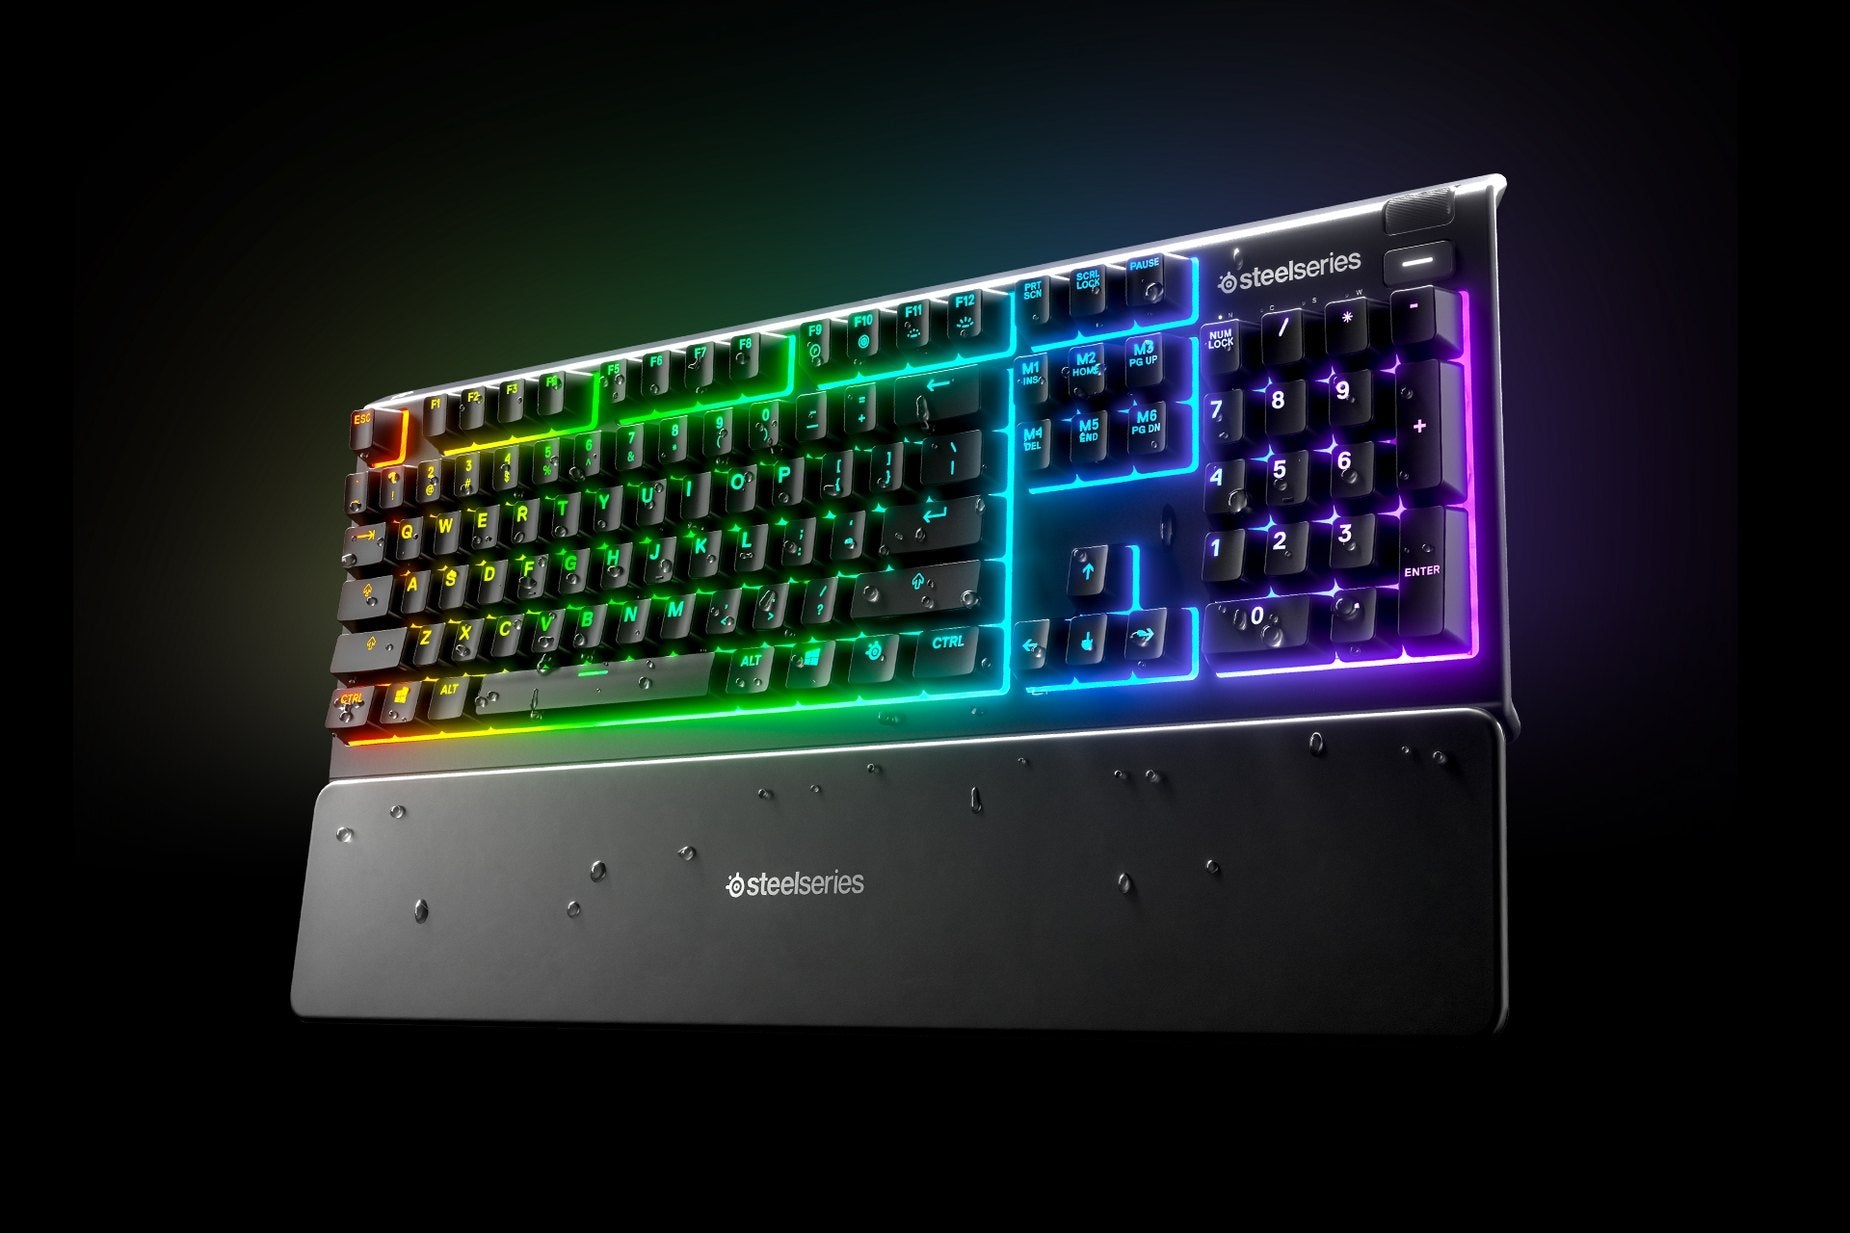 SteelSeries Apex 3 RGB Water resistant gaming keyboard